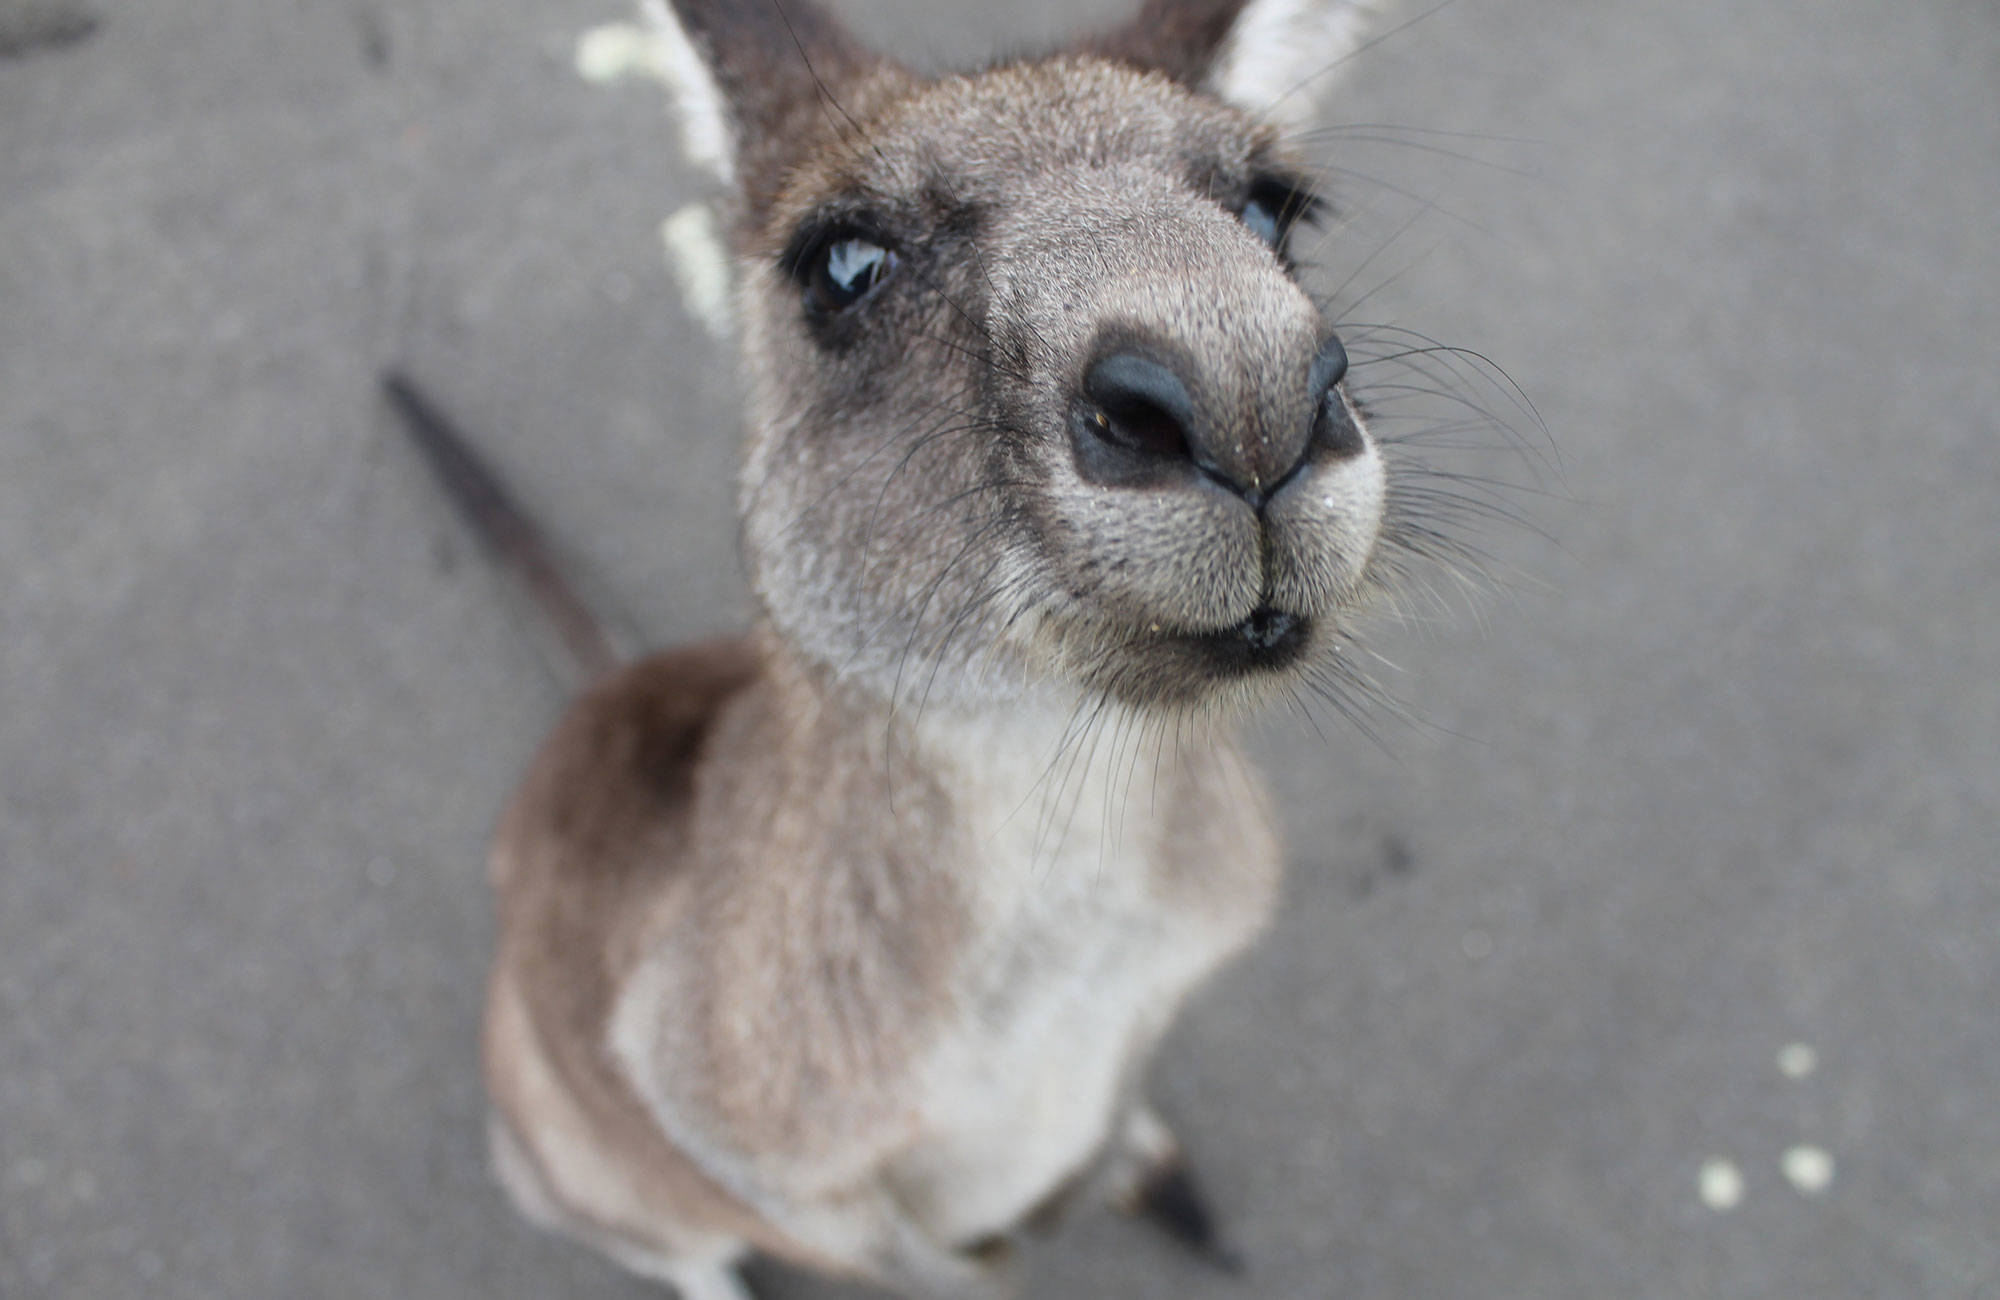 australia-kangaroo-cover